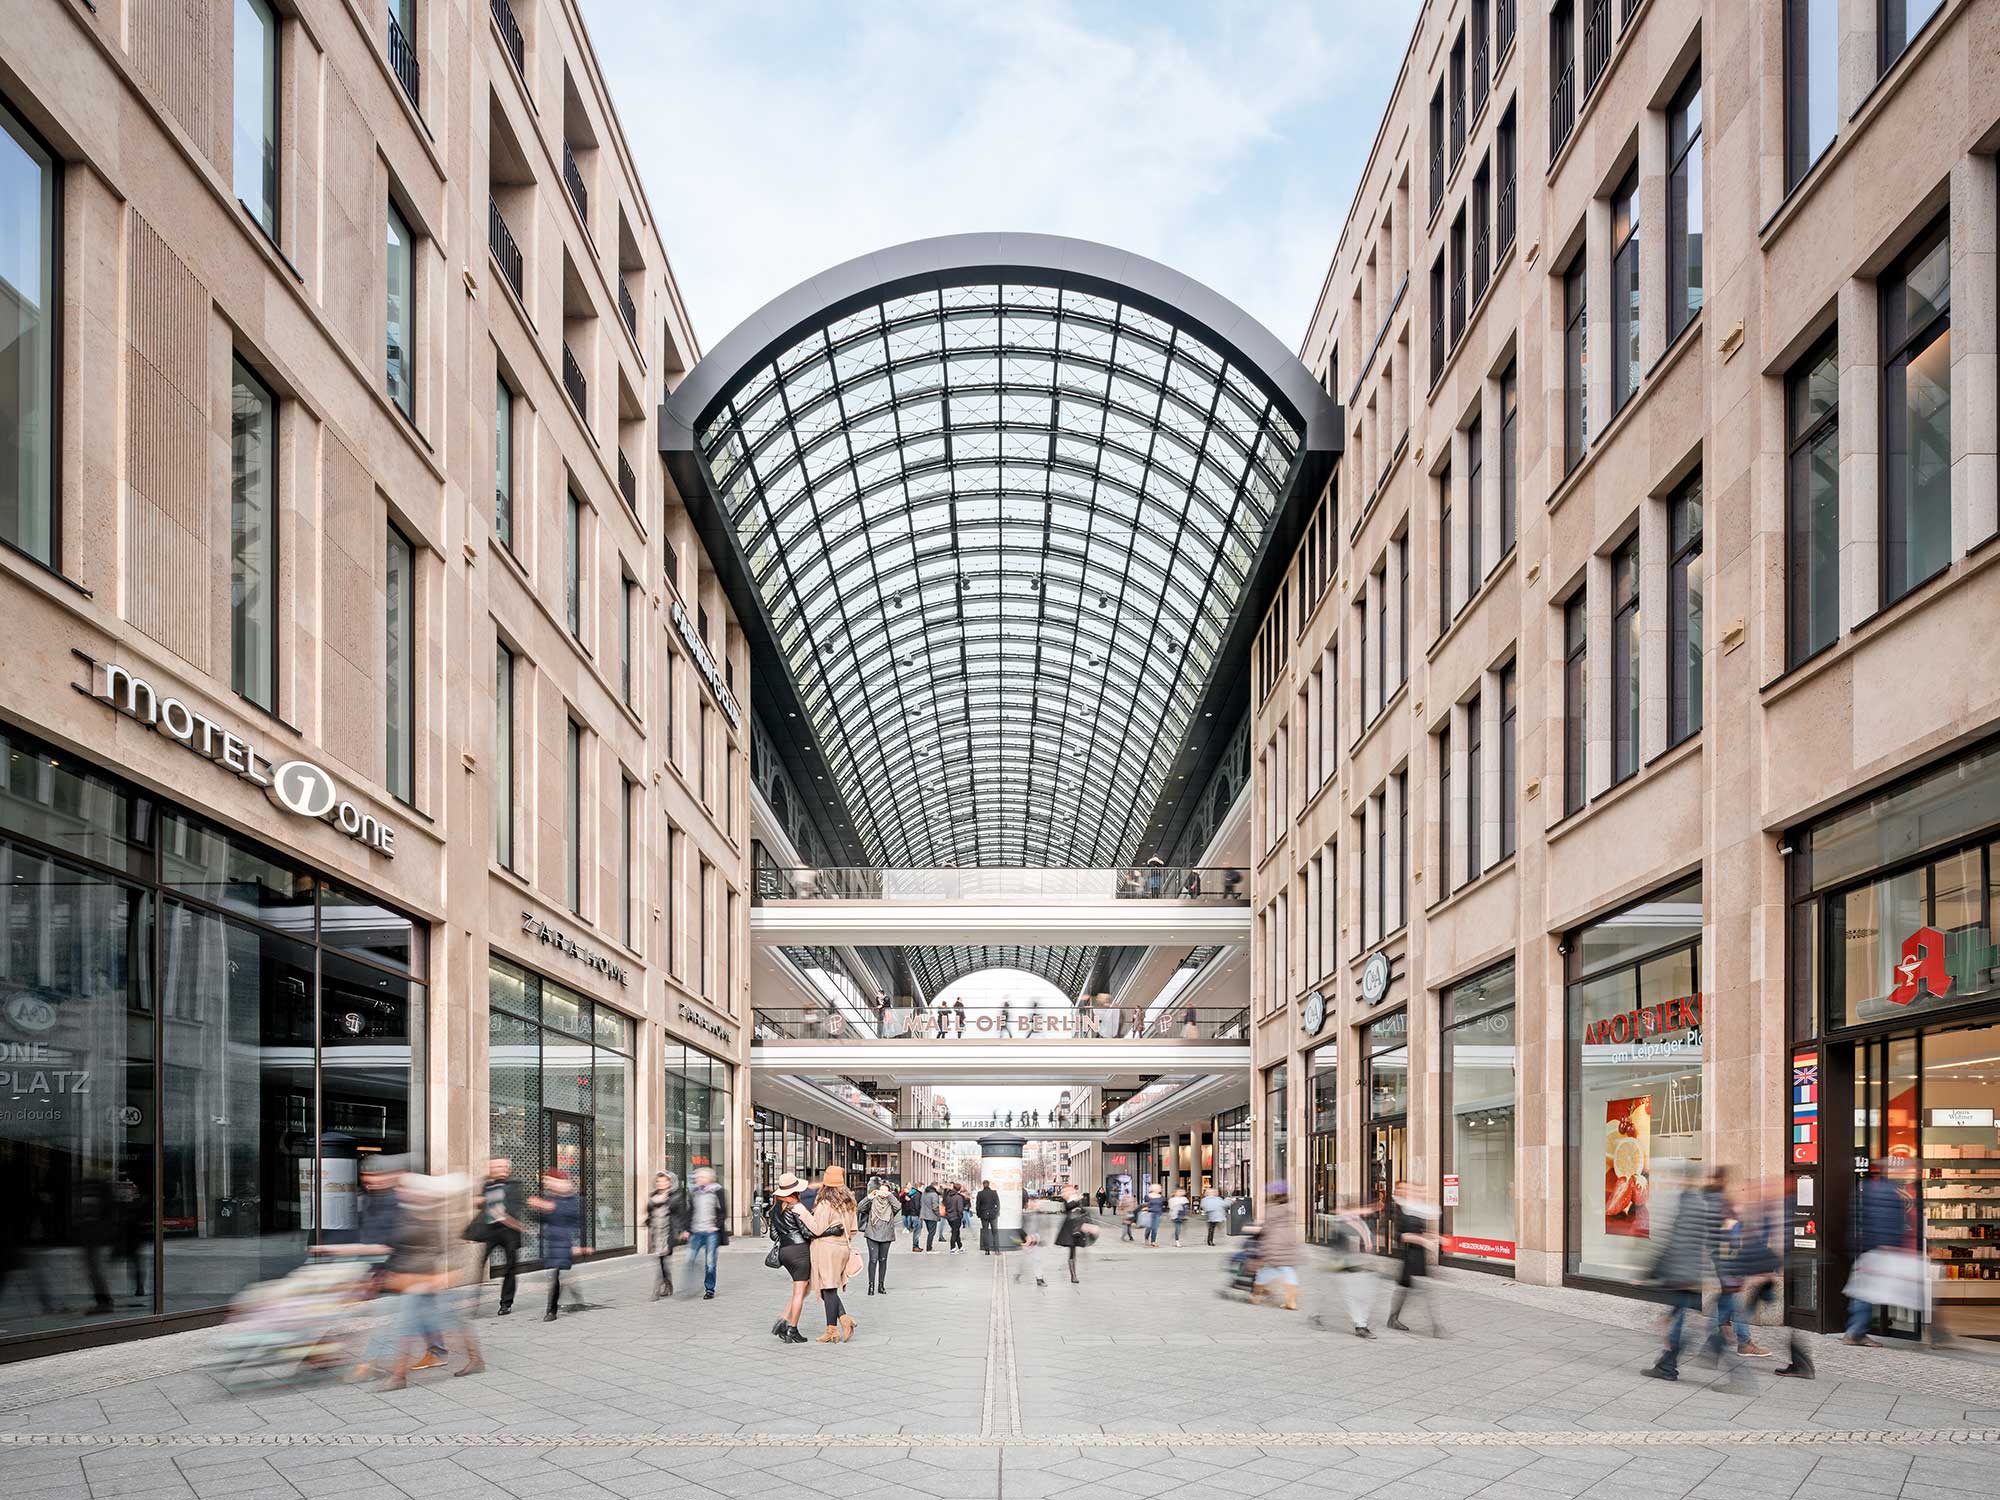 Das britische Menswear-Label Hackett London expandiert mit neuem Store in der Mall of Berlin